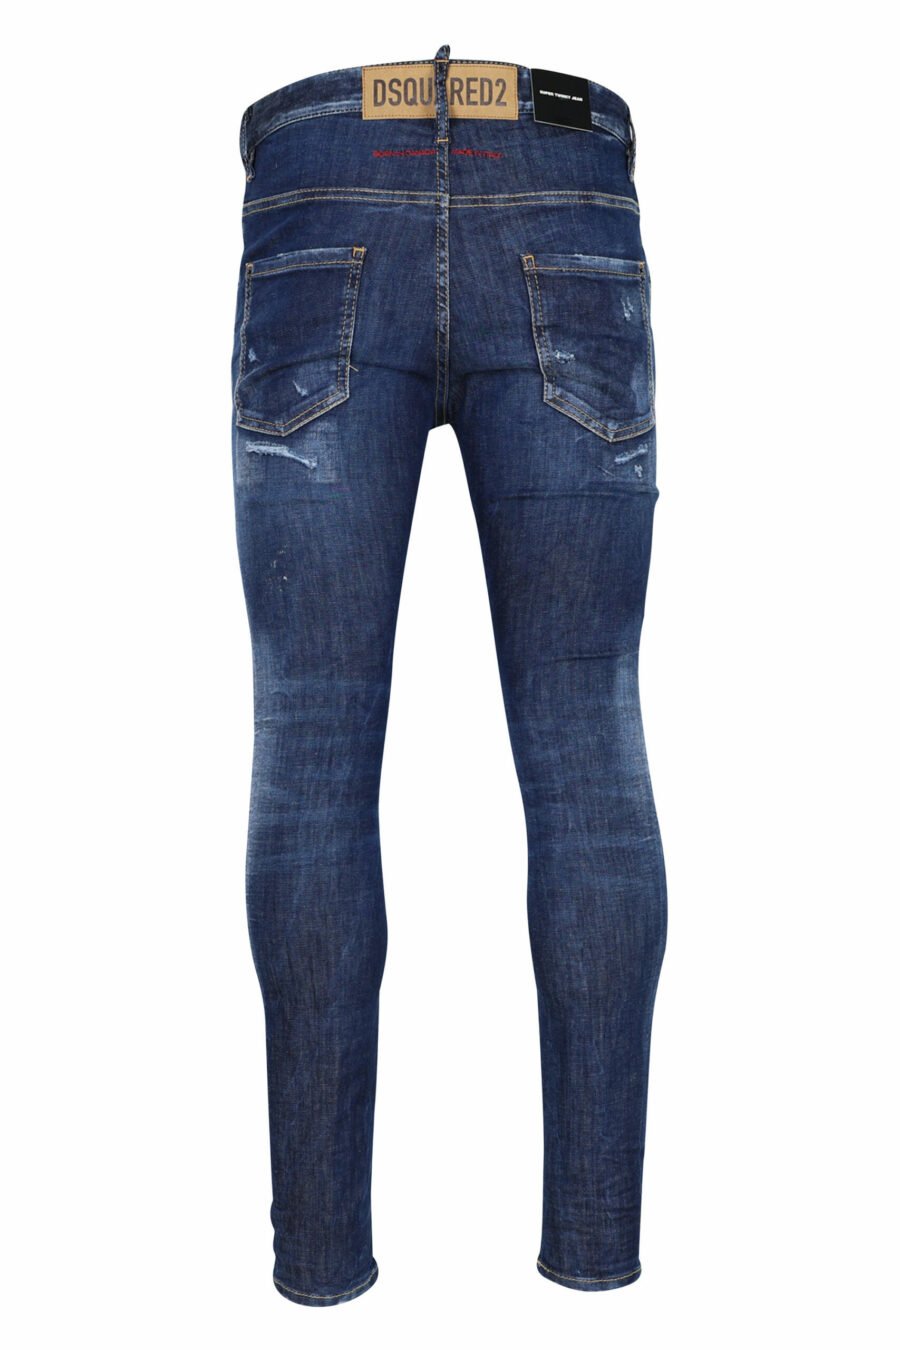 Pantalón vaquero "super twinky jean" azul con rotos y desgastado - 8054148106201 2 scaled